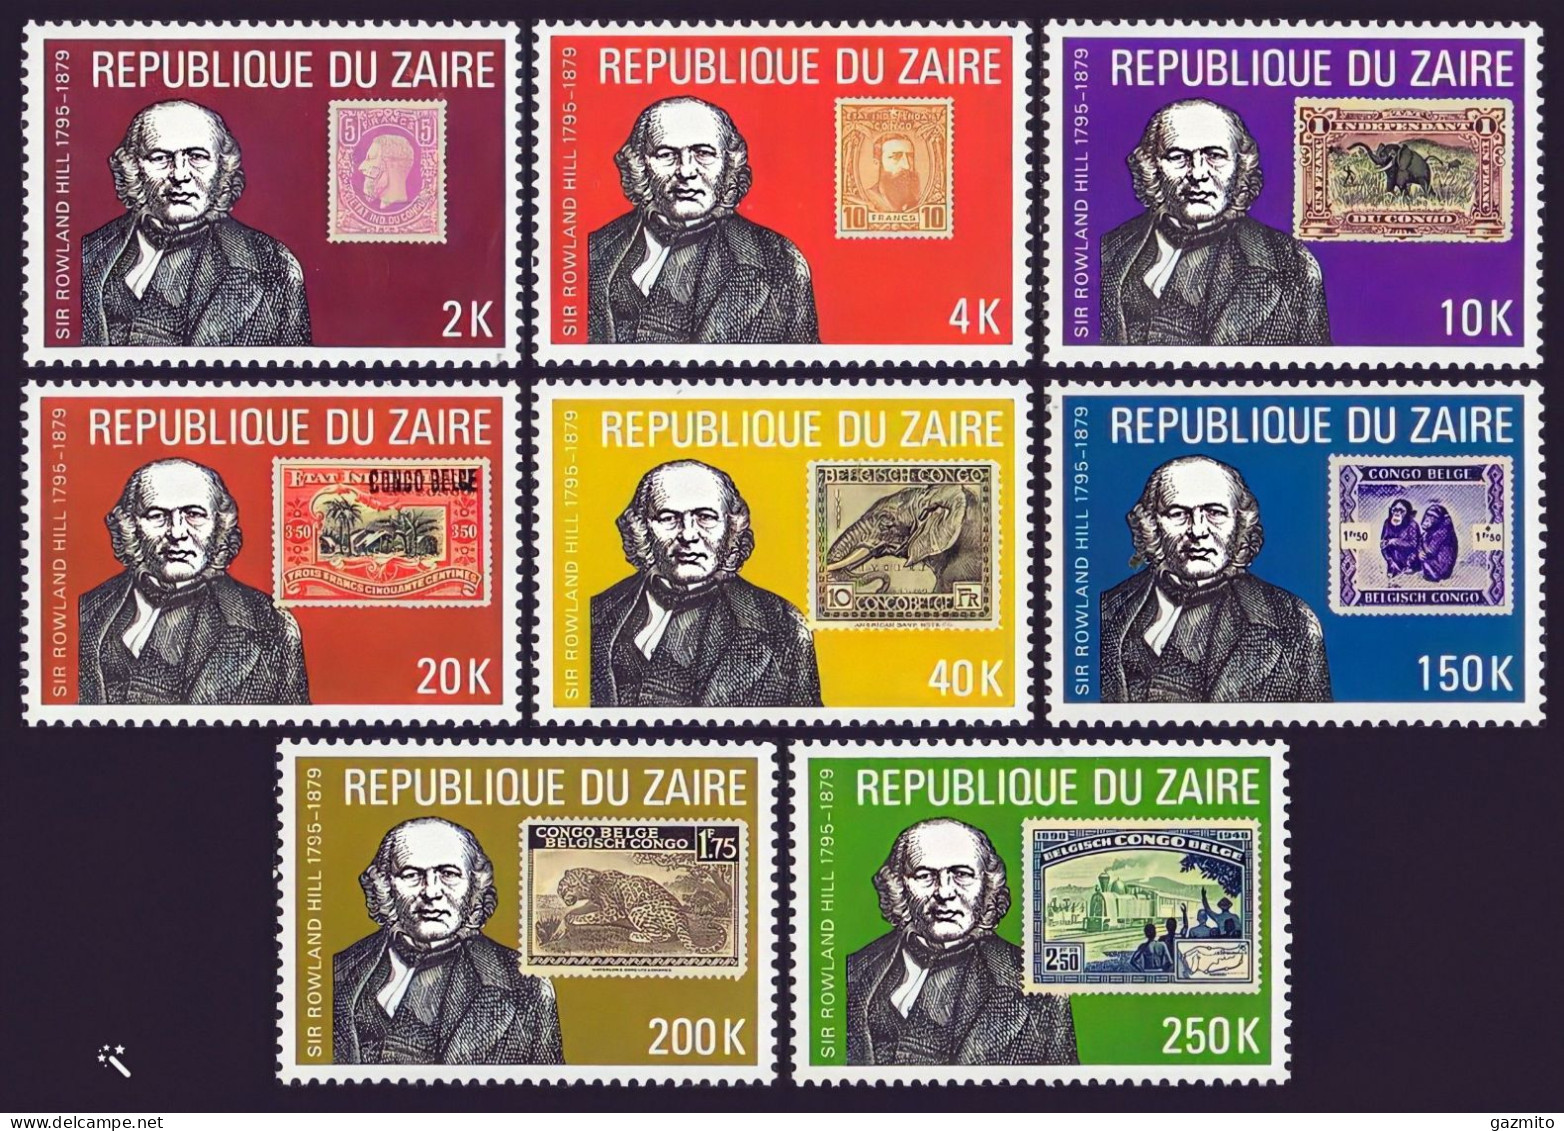 Zaire 1980, Rowland Hill, Stamp On Stamp, Wild Cat, Monkey, Elephant, 8val - Ungebraucht